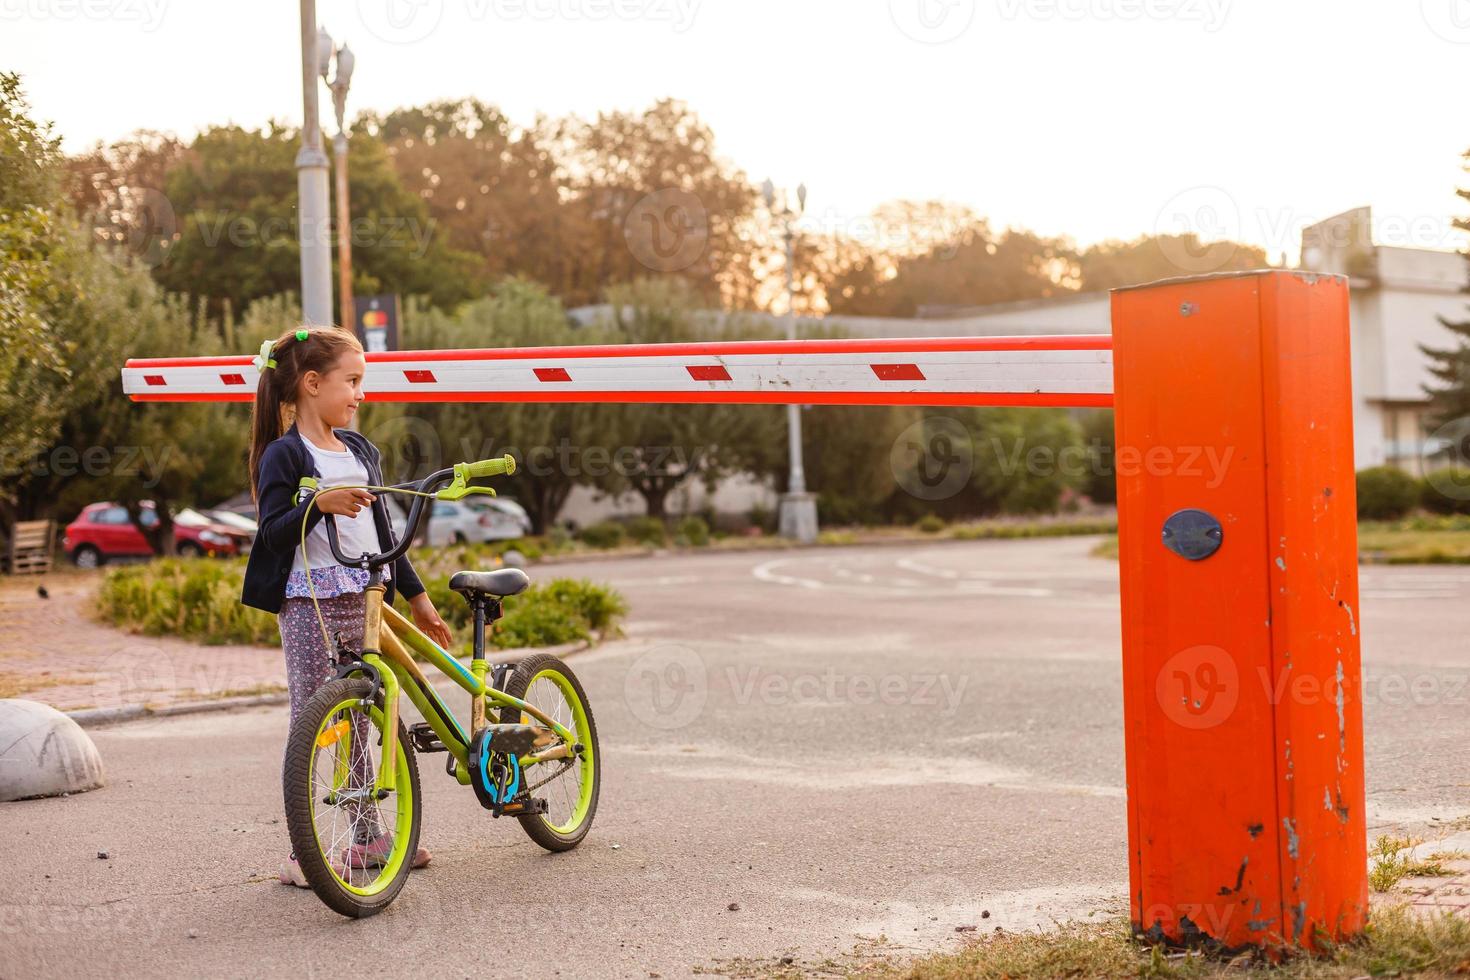 menina em uma bicicleta perto da barreira foto